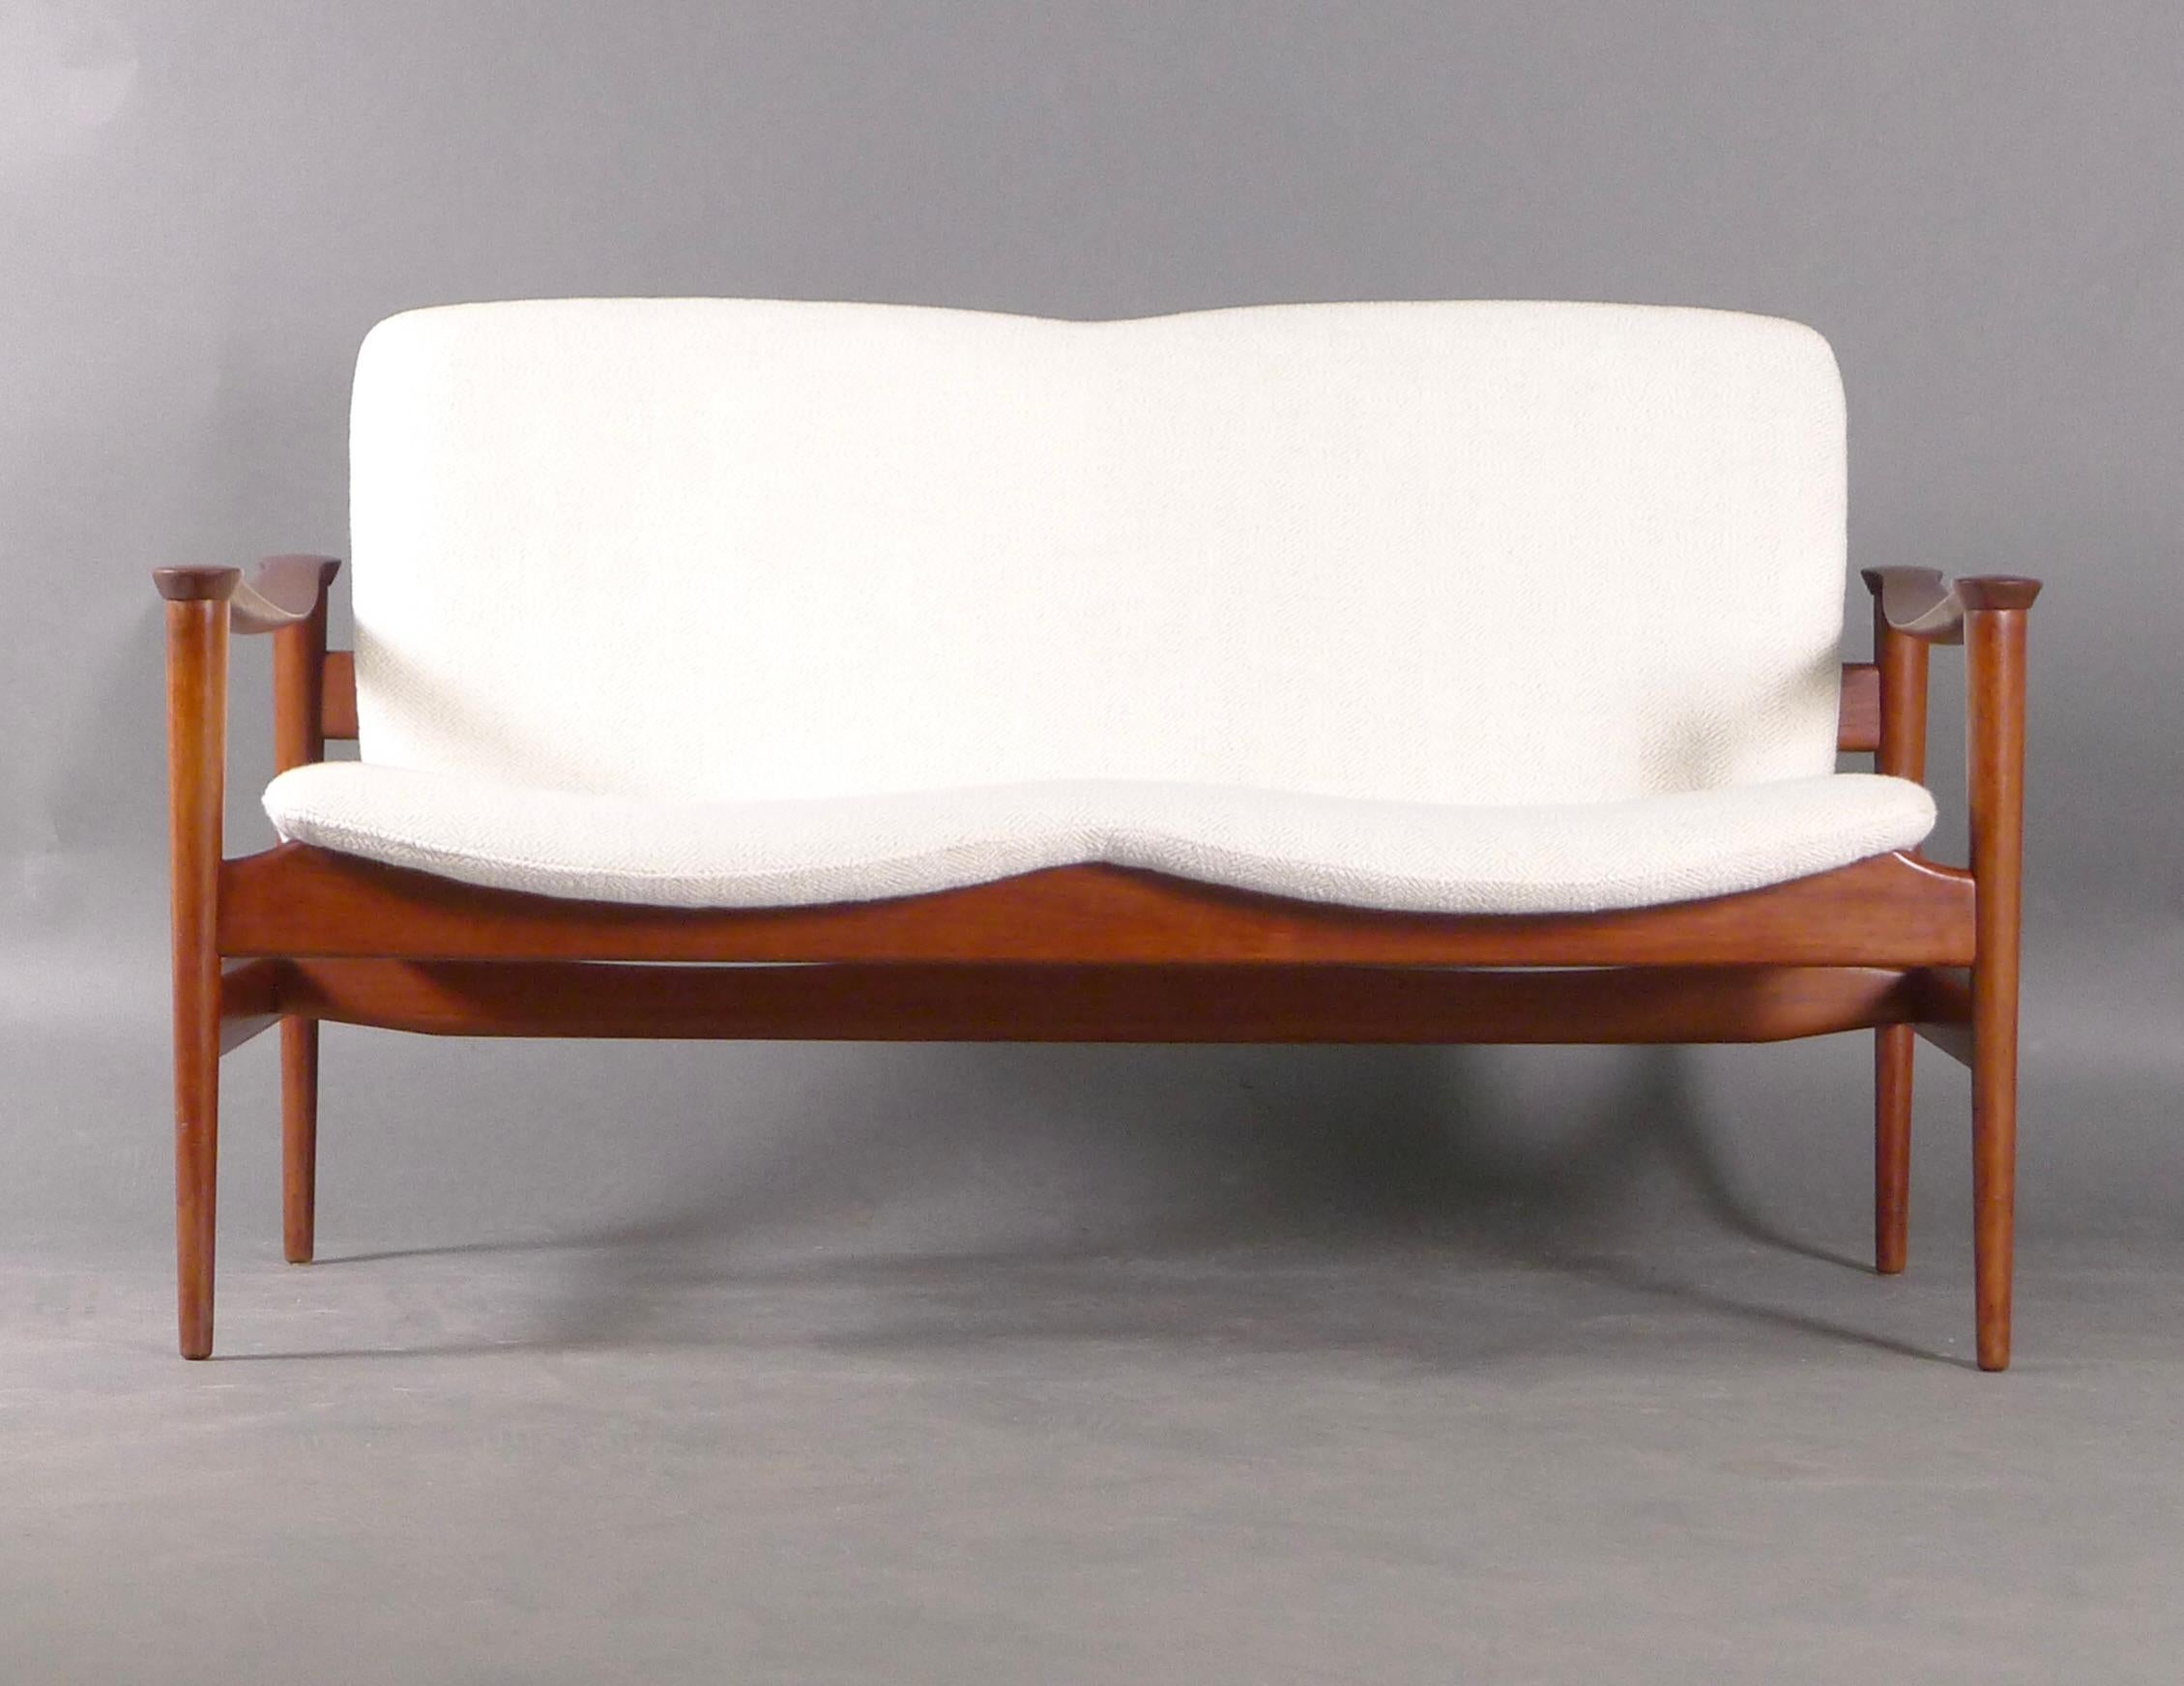 Schönes norwegisches Zweisitzer-Sofa oder Loveseat, Modell 711, entworfen von Fredrik A. Kayser im Jahr 1960 und hergestellt von Vatne Lenestolfabrikk.  Das Gestell aus Teakholz hat eine schöne Patina und ist an den geformten Armlehnen mit Rundungen